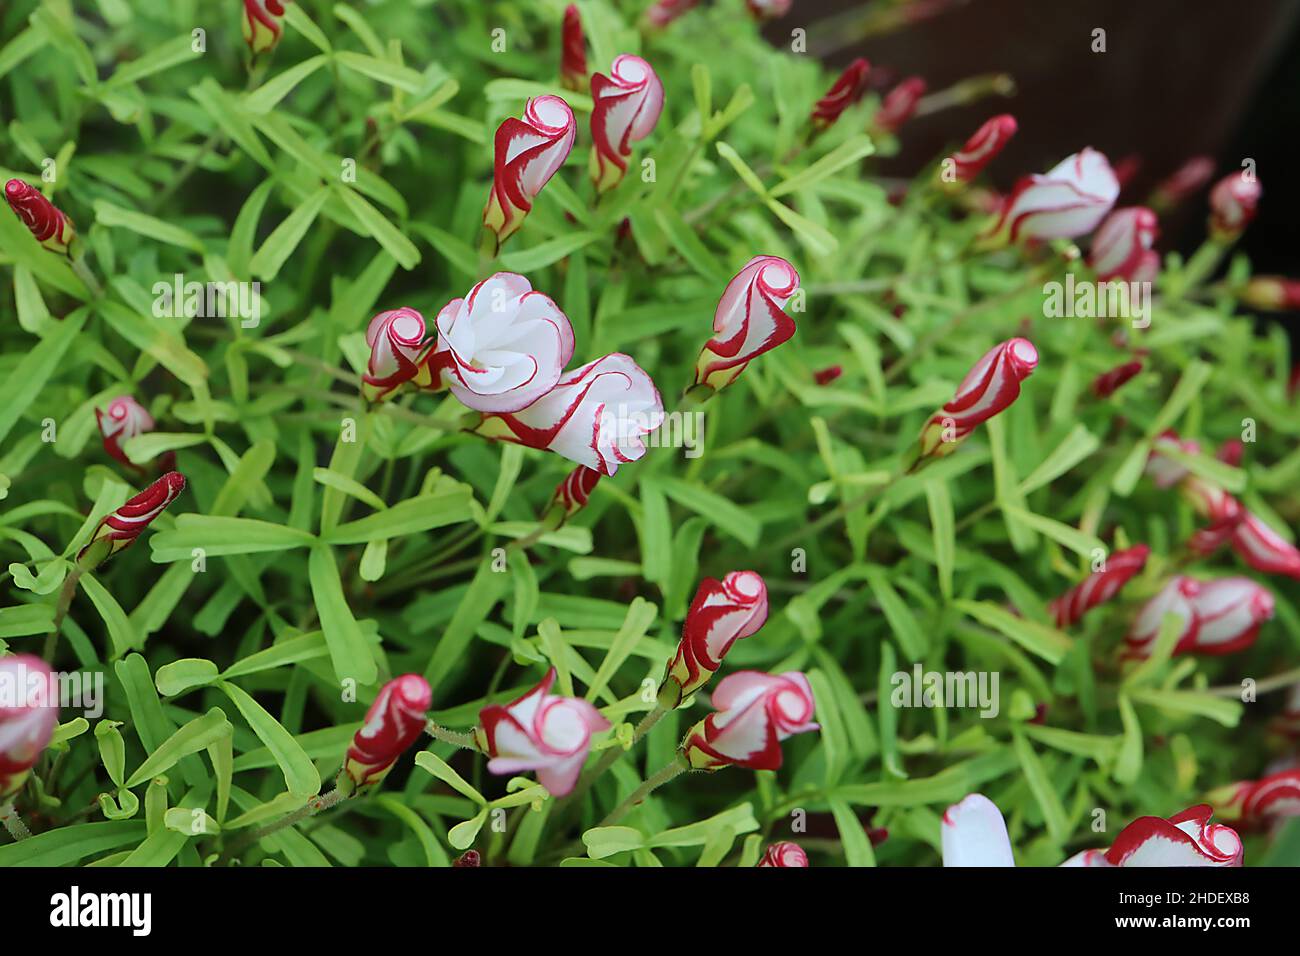 Oxalis versicolor caramella di canna – arrotolato tubolare fiori bianchi con margini di cremisi, oblò intagliato allungato verde brillante, gennaio, Inghilterra Foto Stock